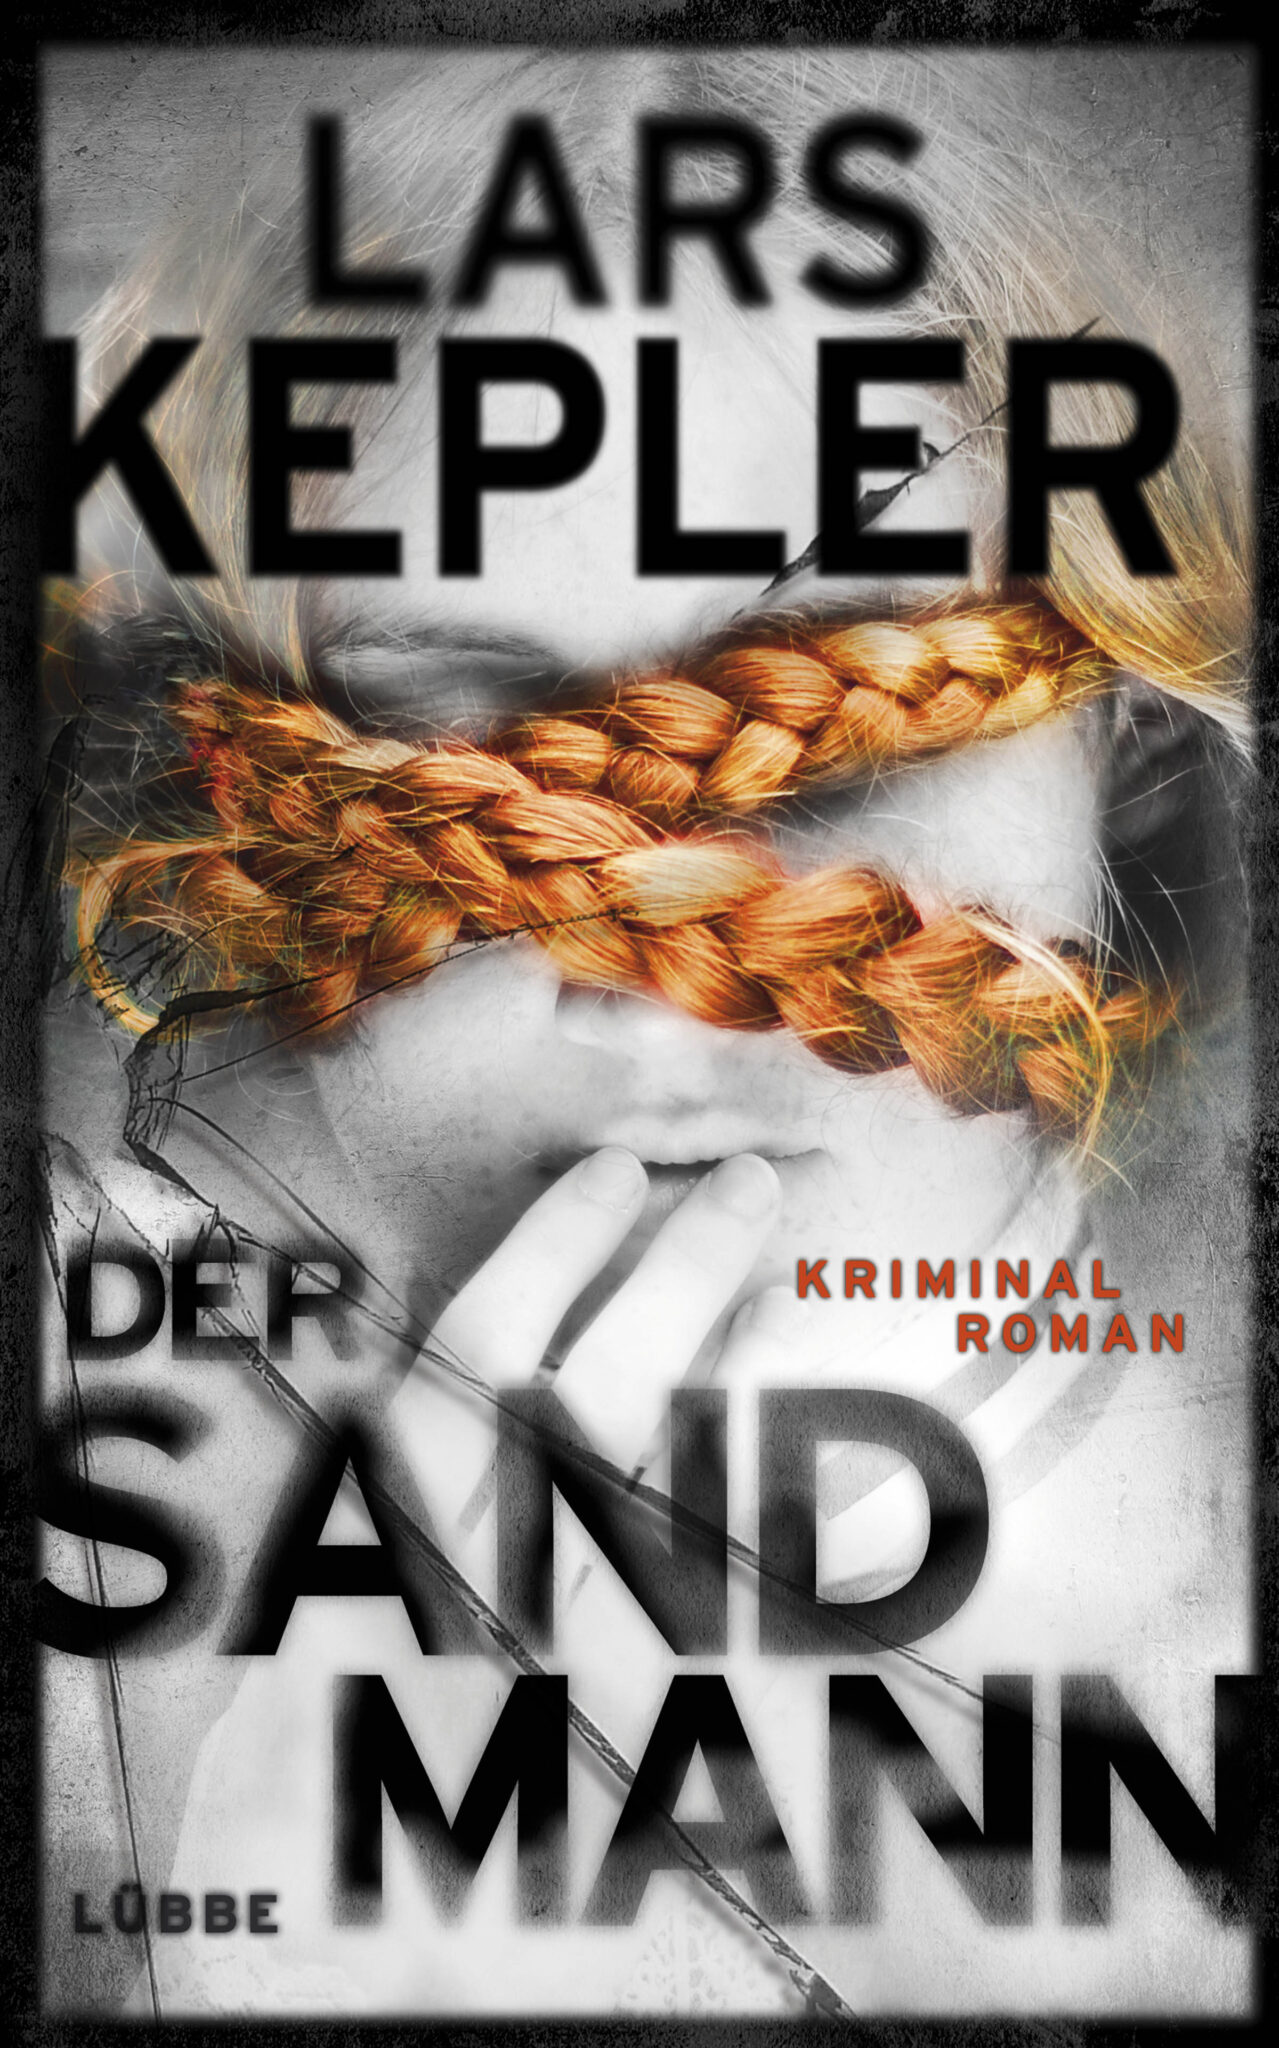 Kepler-Der-Sandmann-org